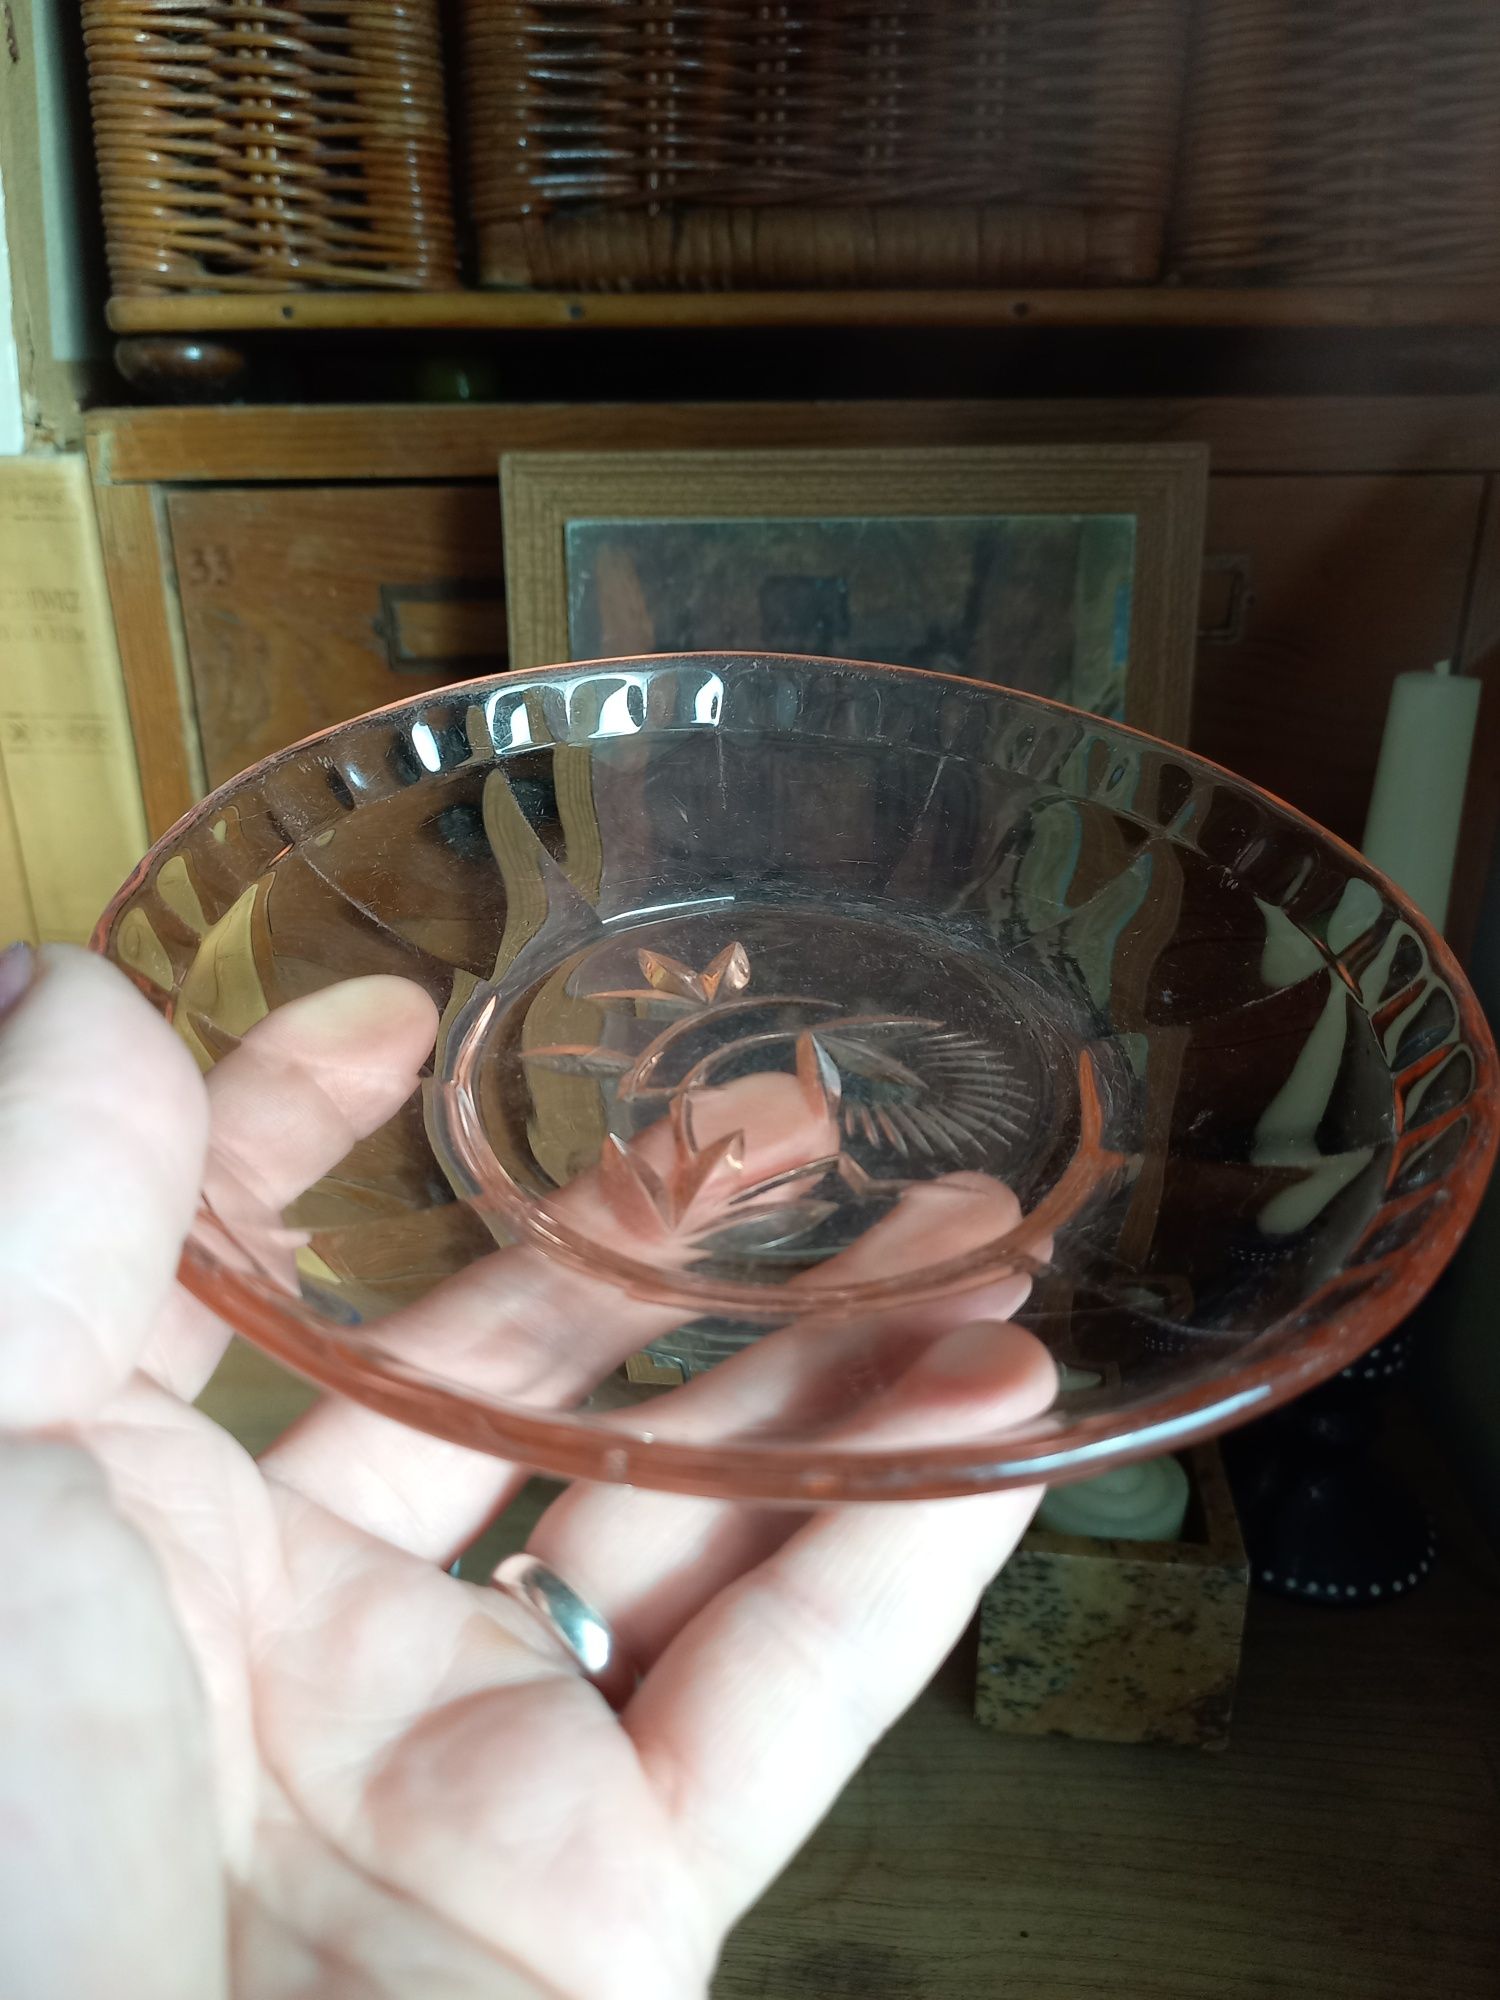 Talerz stare szkło prl rozalinowe rózowe talerzyk deserowy